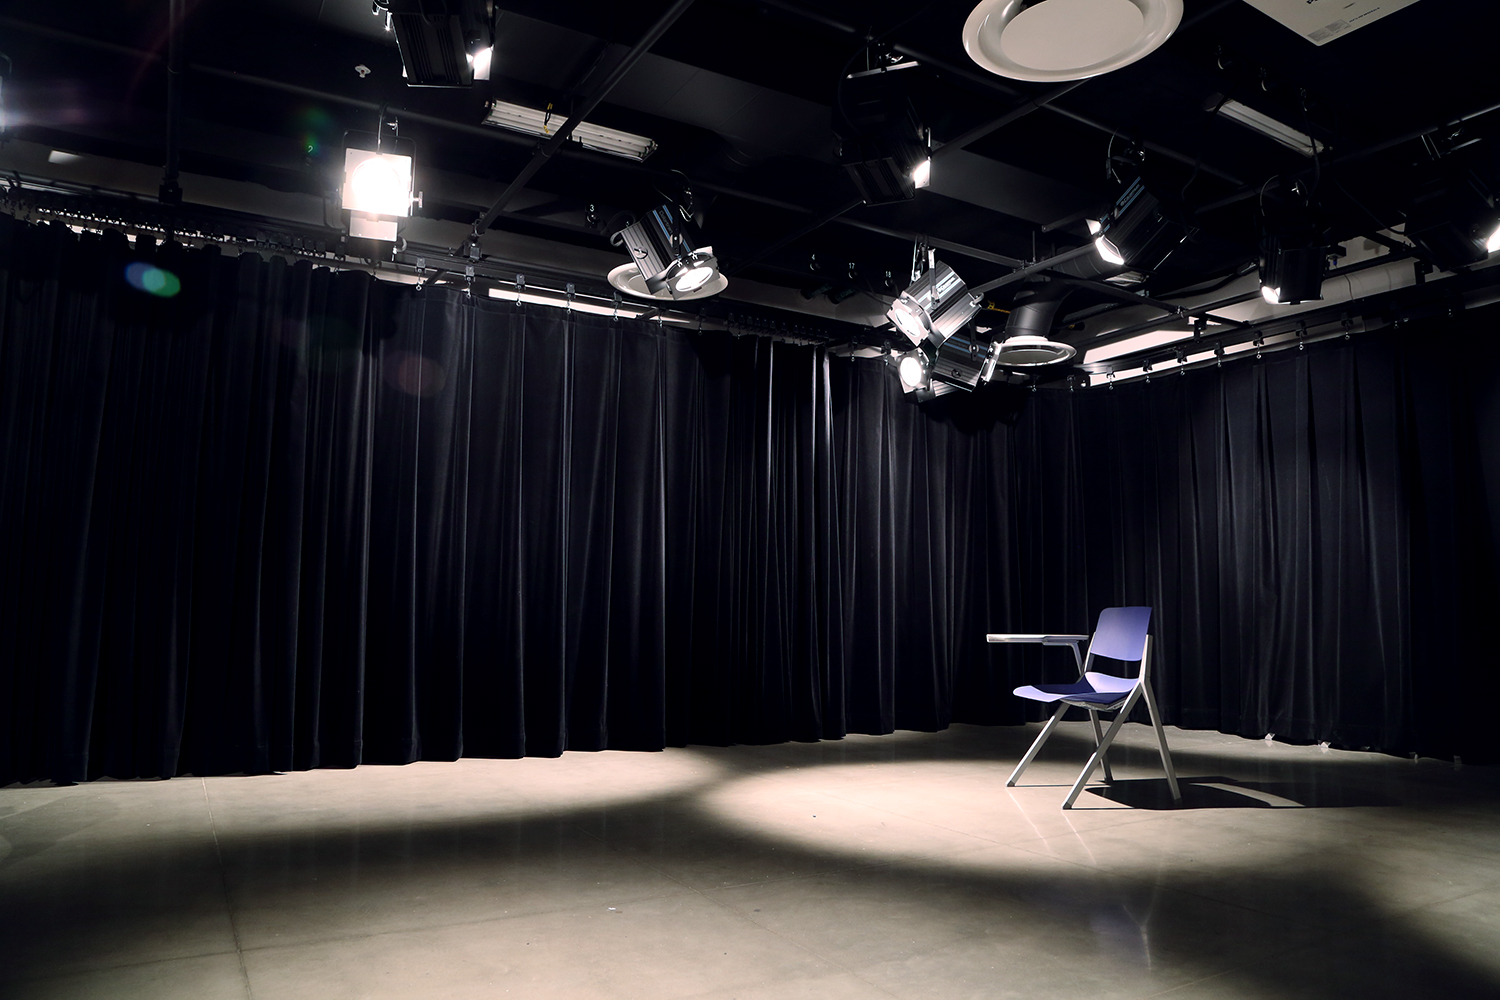 The Film Studio at PCC